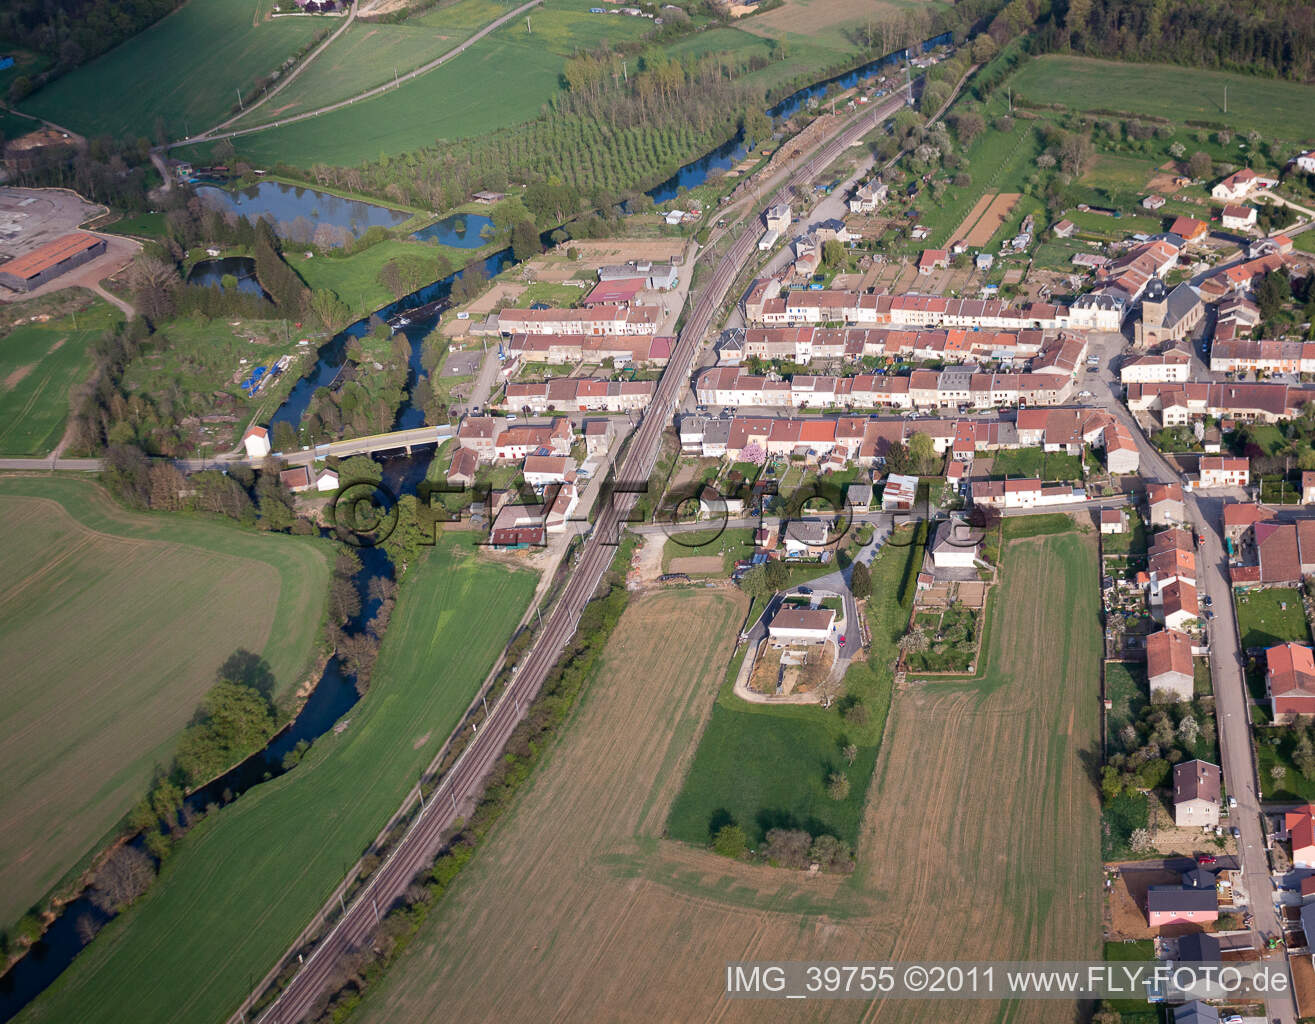 Vue oblique de Champs agricoles et surfaces utilisables à Charency-Vezin dans le département Meurthe et Moselle, France